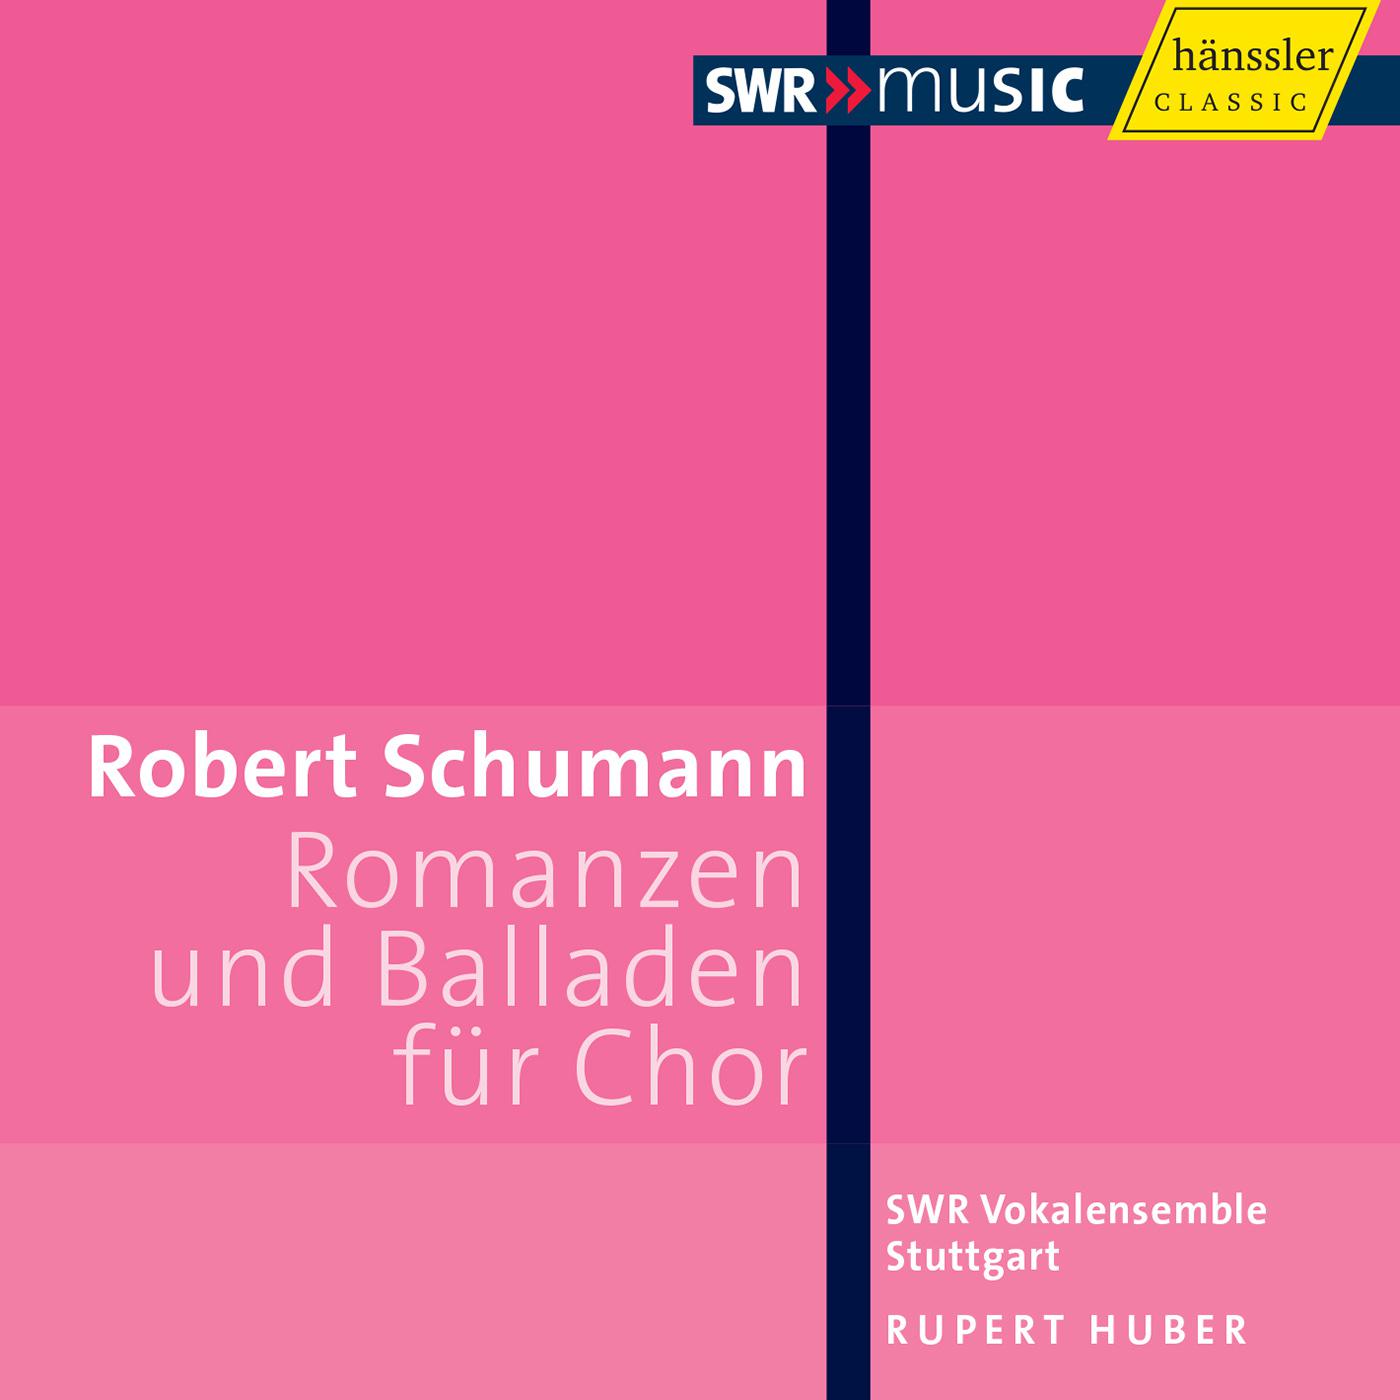 Rupert Huber - Romanzen und Balladen, Book 4, Op. 146:Der Bankelsanger Willi